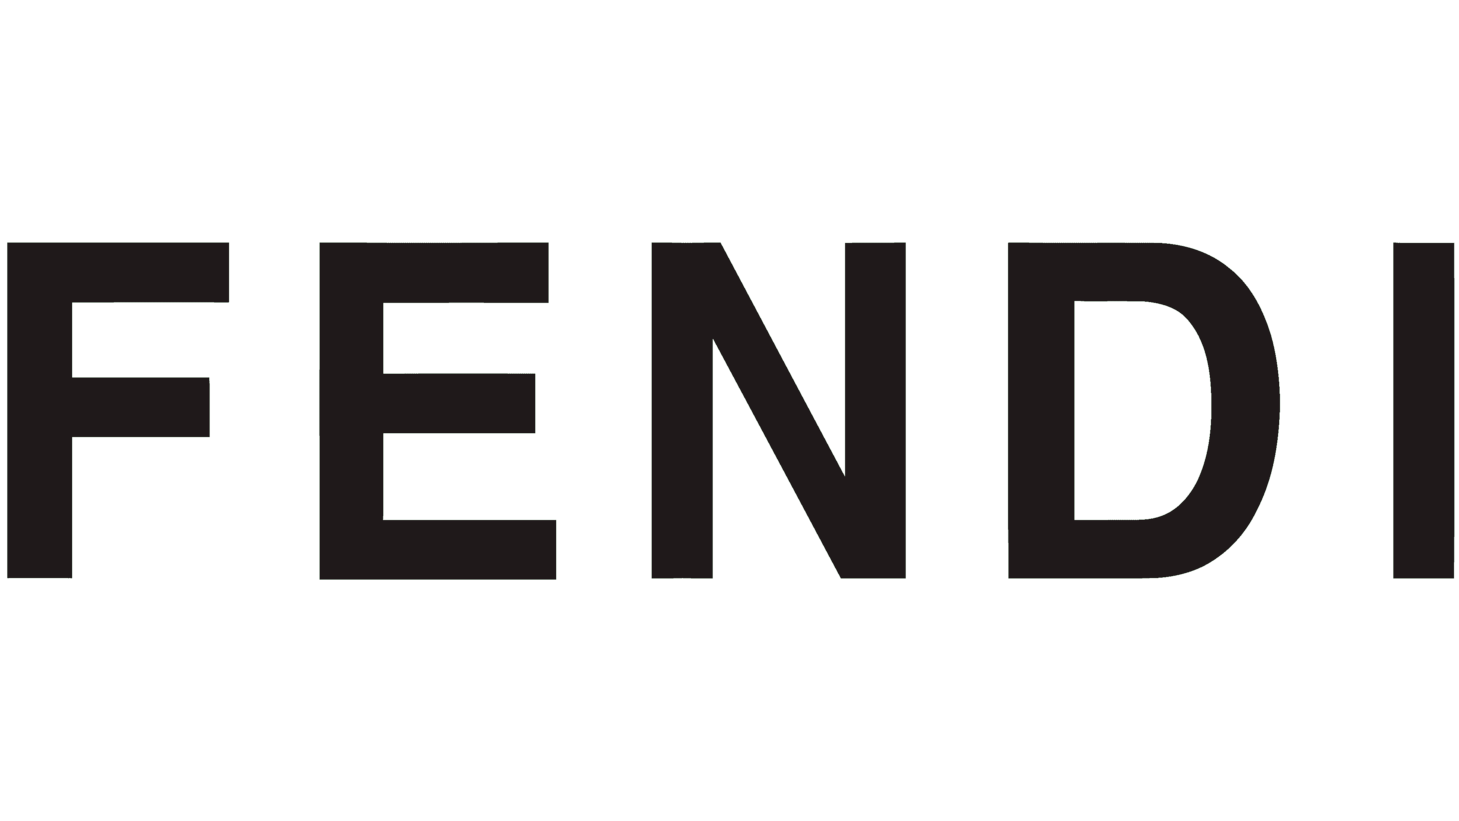 Fendi sign 2000 2013